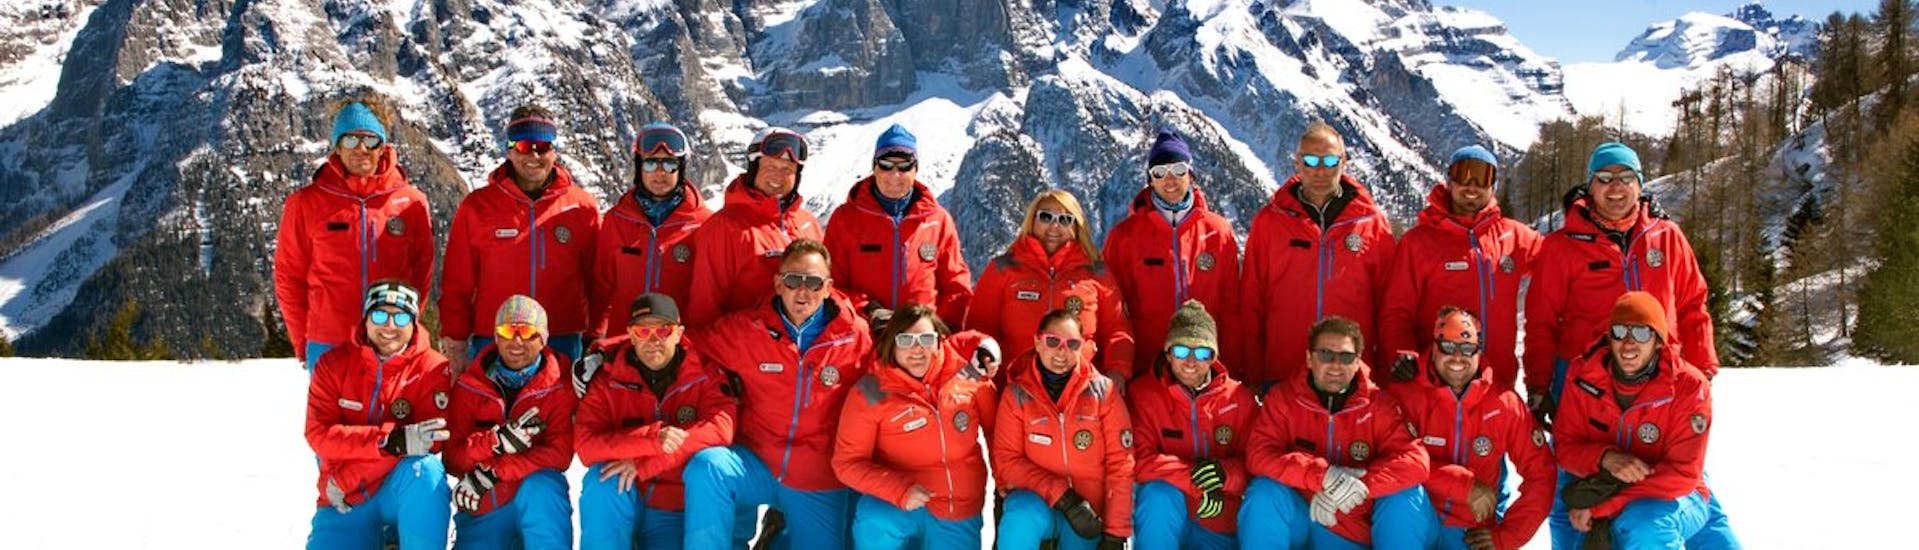 I maestri di sci e snowboard della Scuola di Sci Val di Sole posano di fronte alla fotocamera.